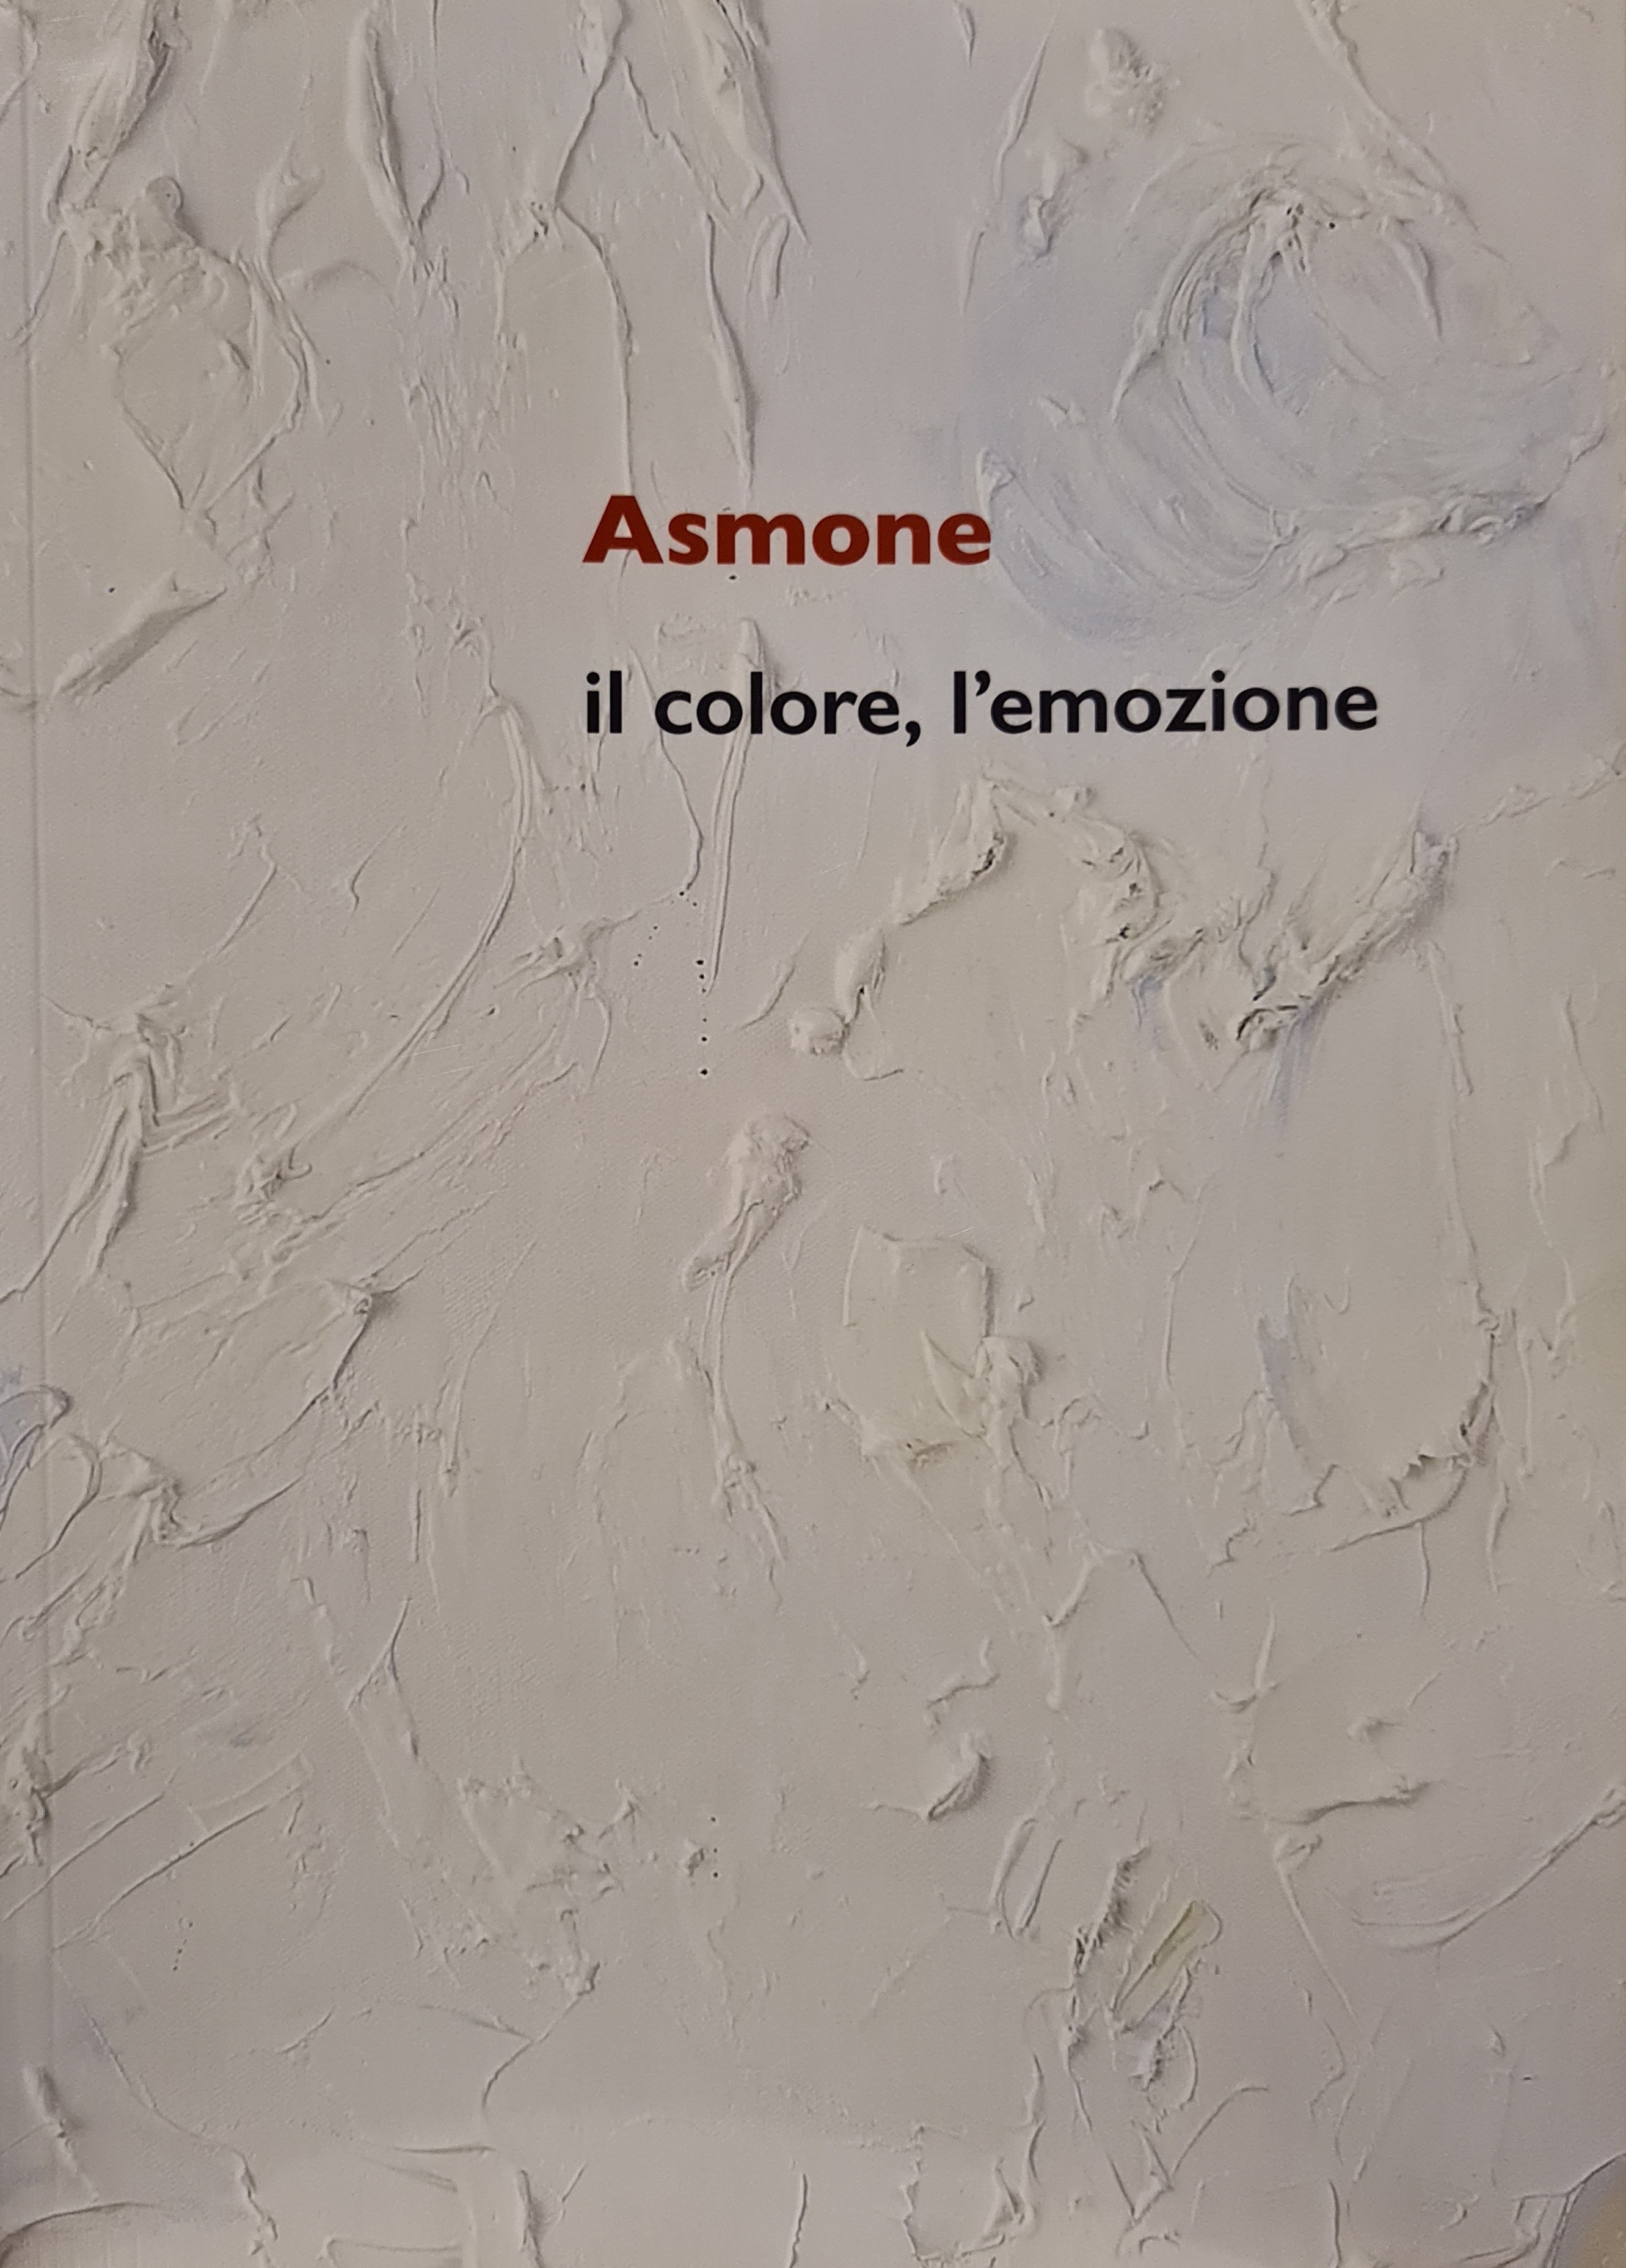 Asmone, il colore, l'emozione, a cura di Giorgio Barassi, Galleria Colonna, 2019